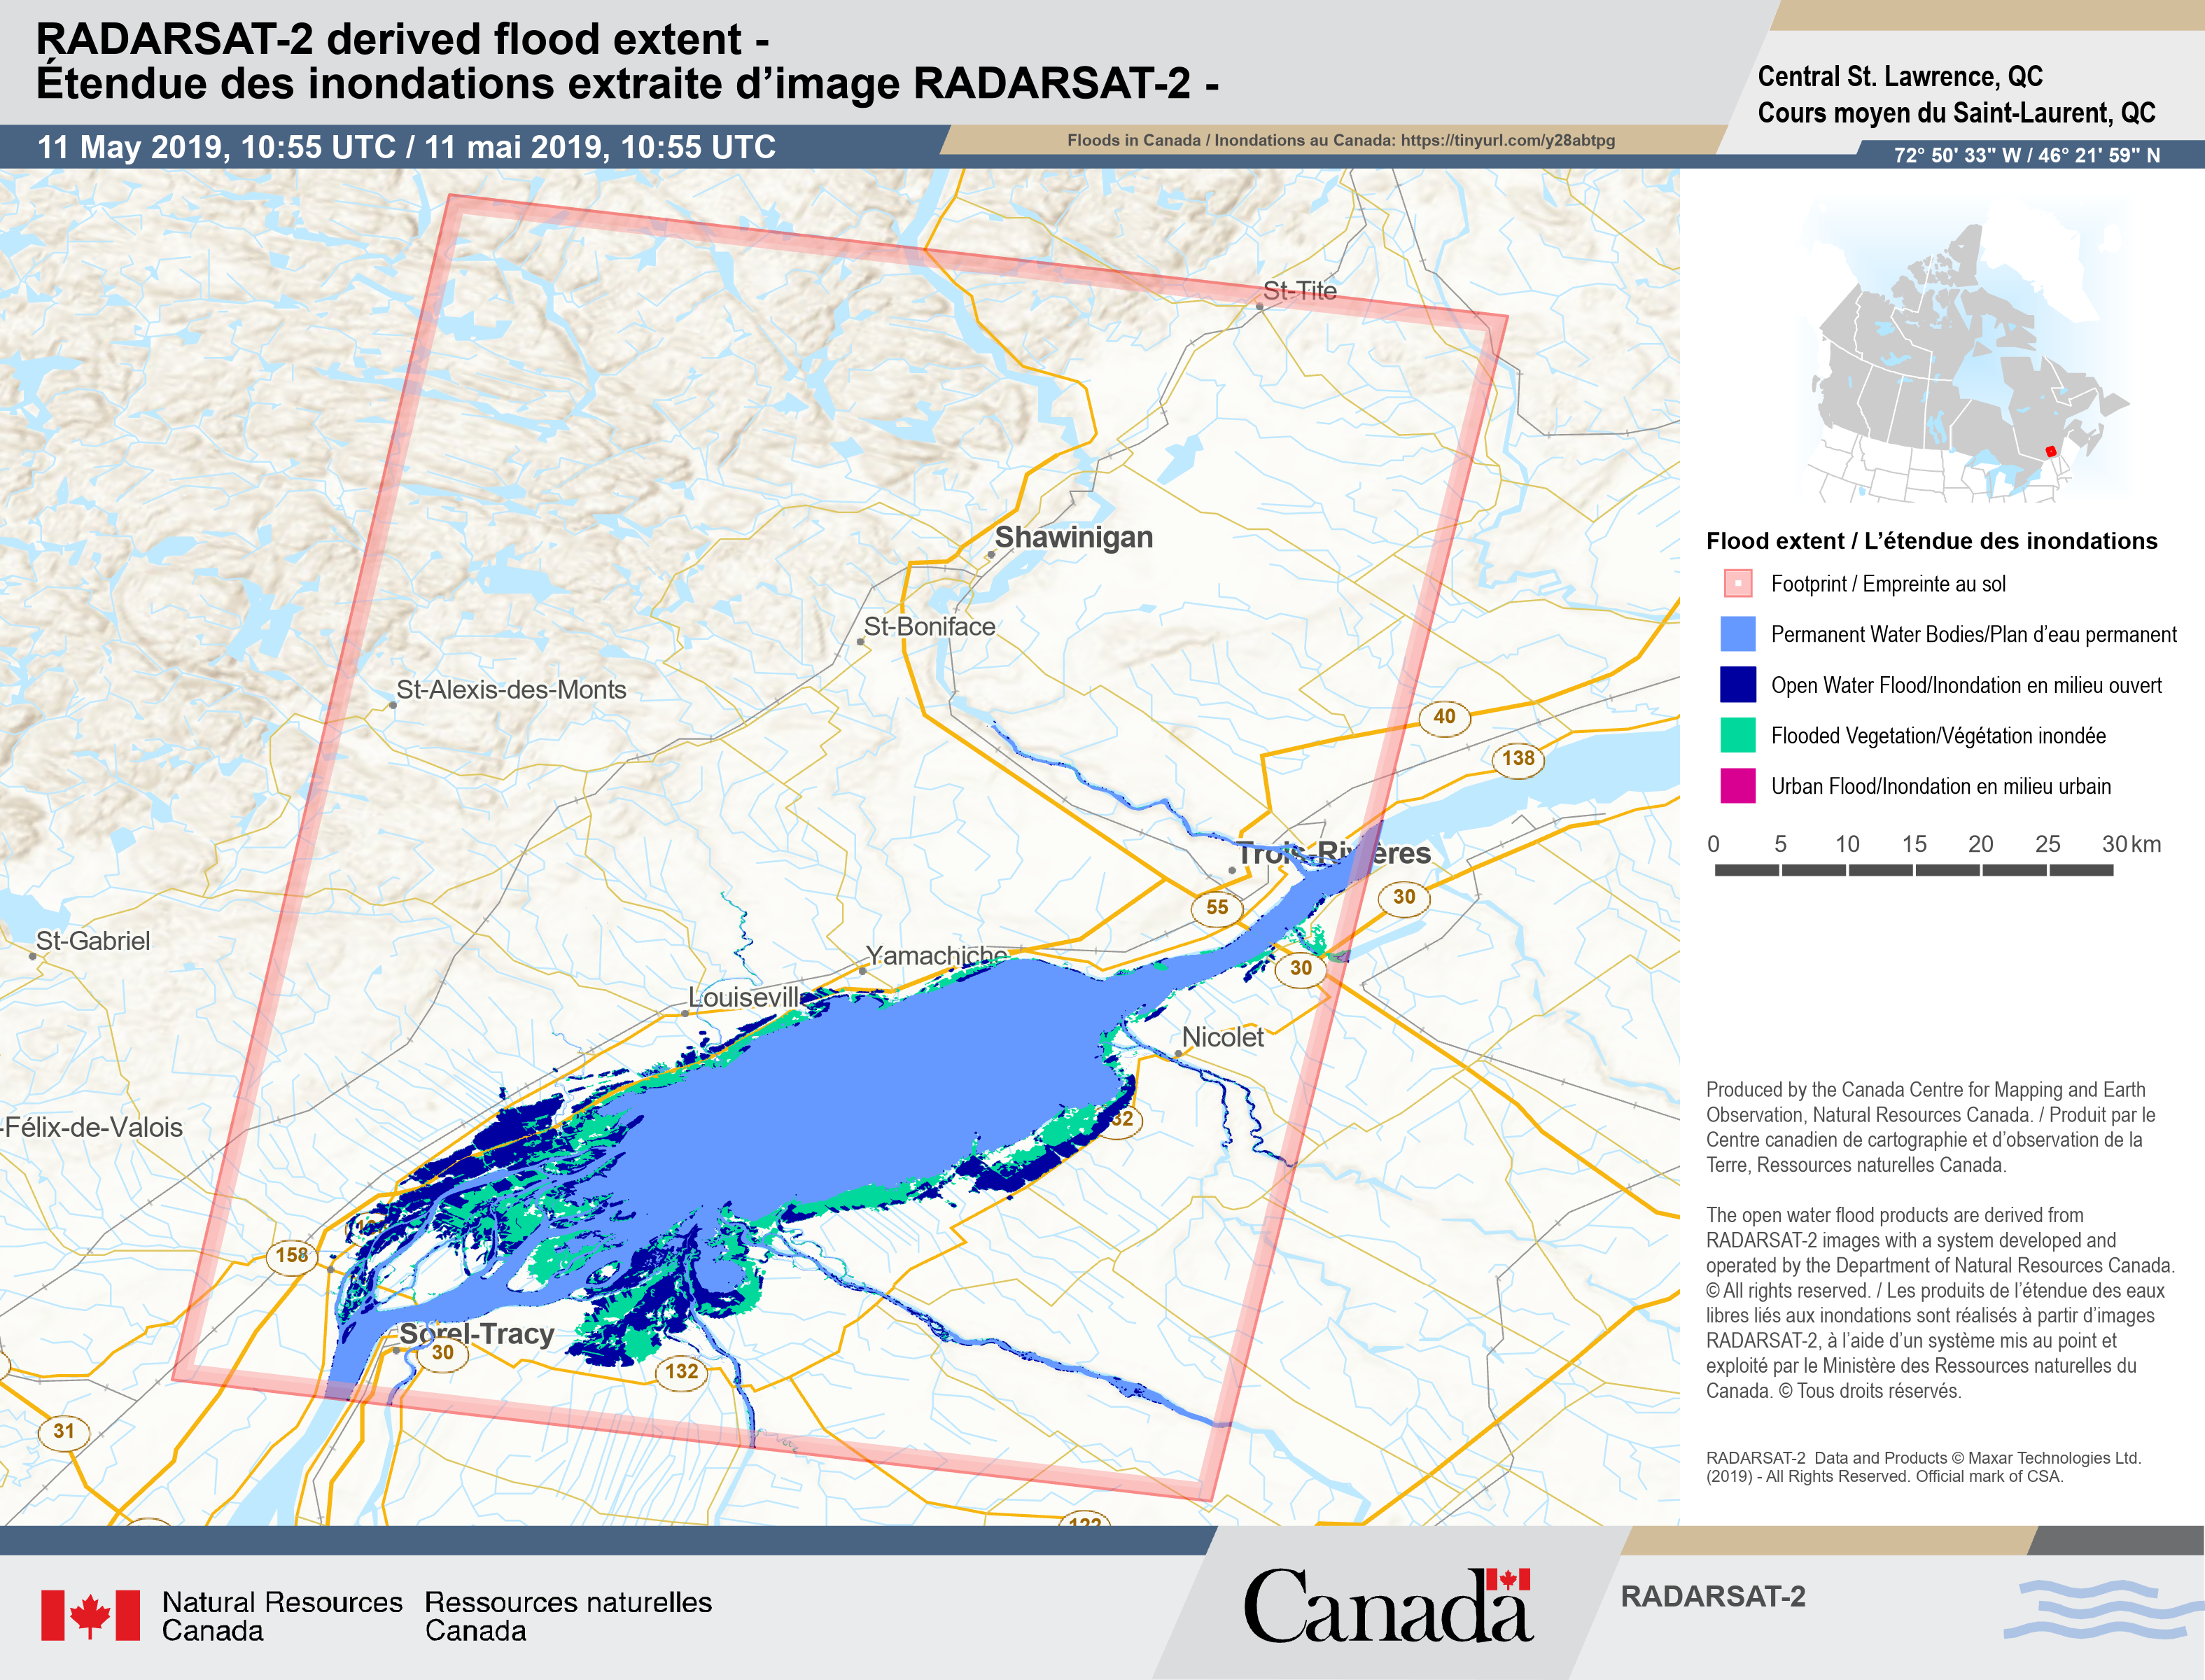 Un exemple de carte des risques d'inondation montre des sections transversales des niveaux de crue à un point d'étude le long de la rivière Rideau.